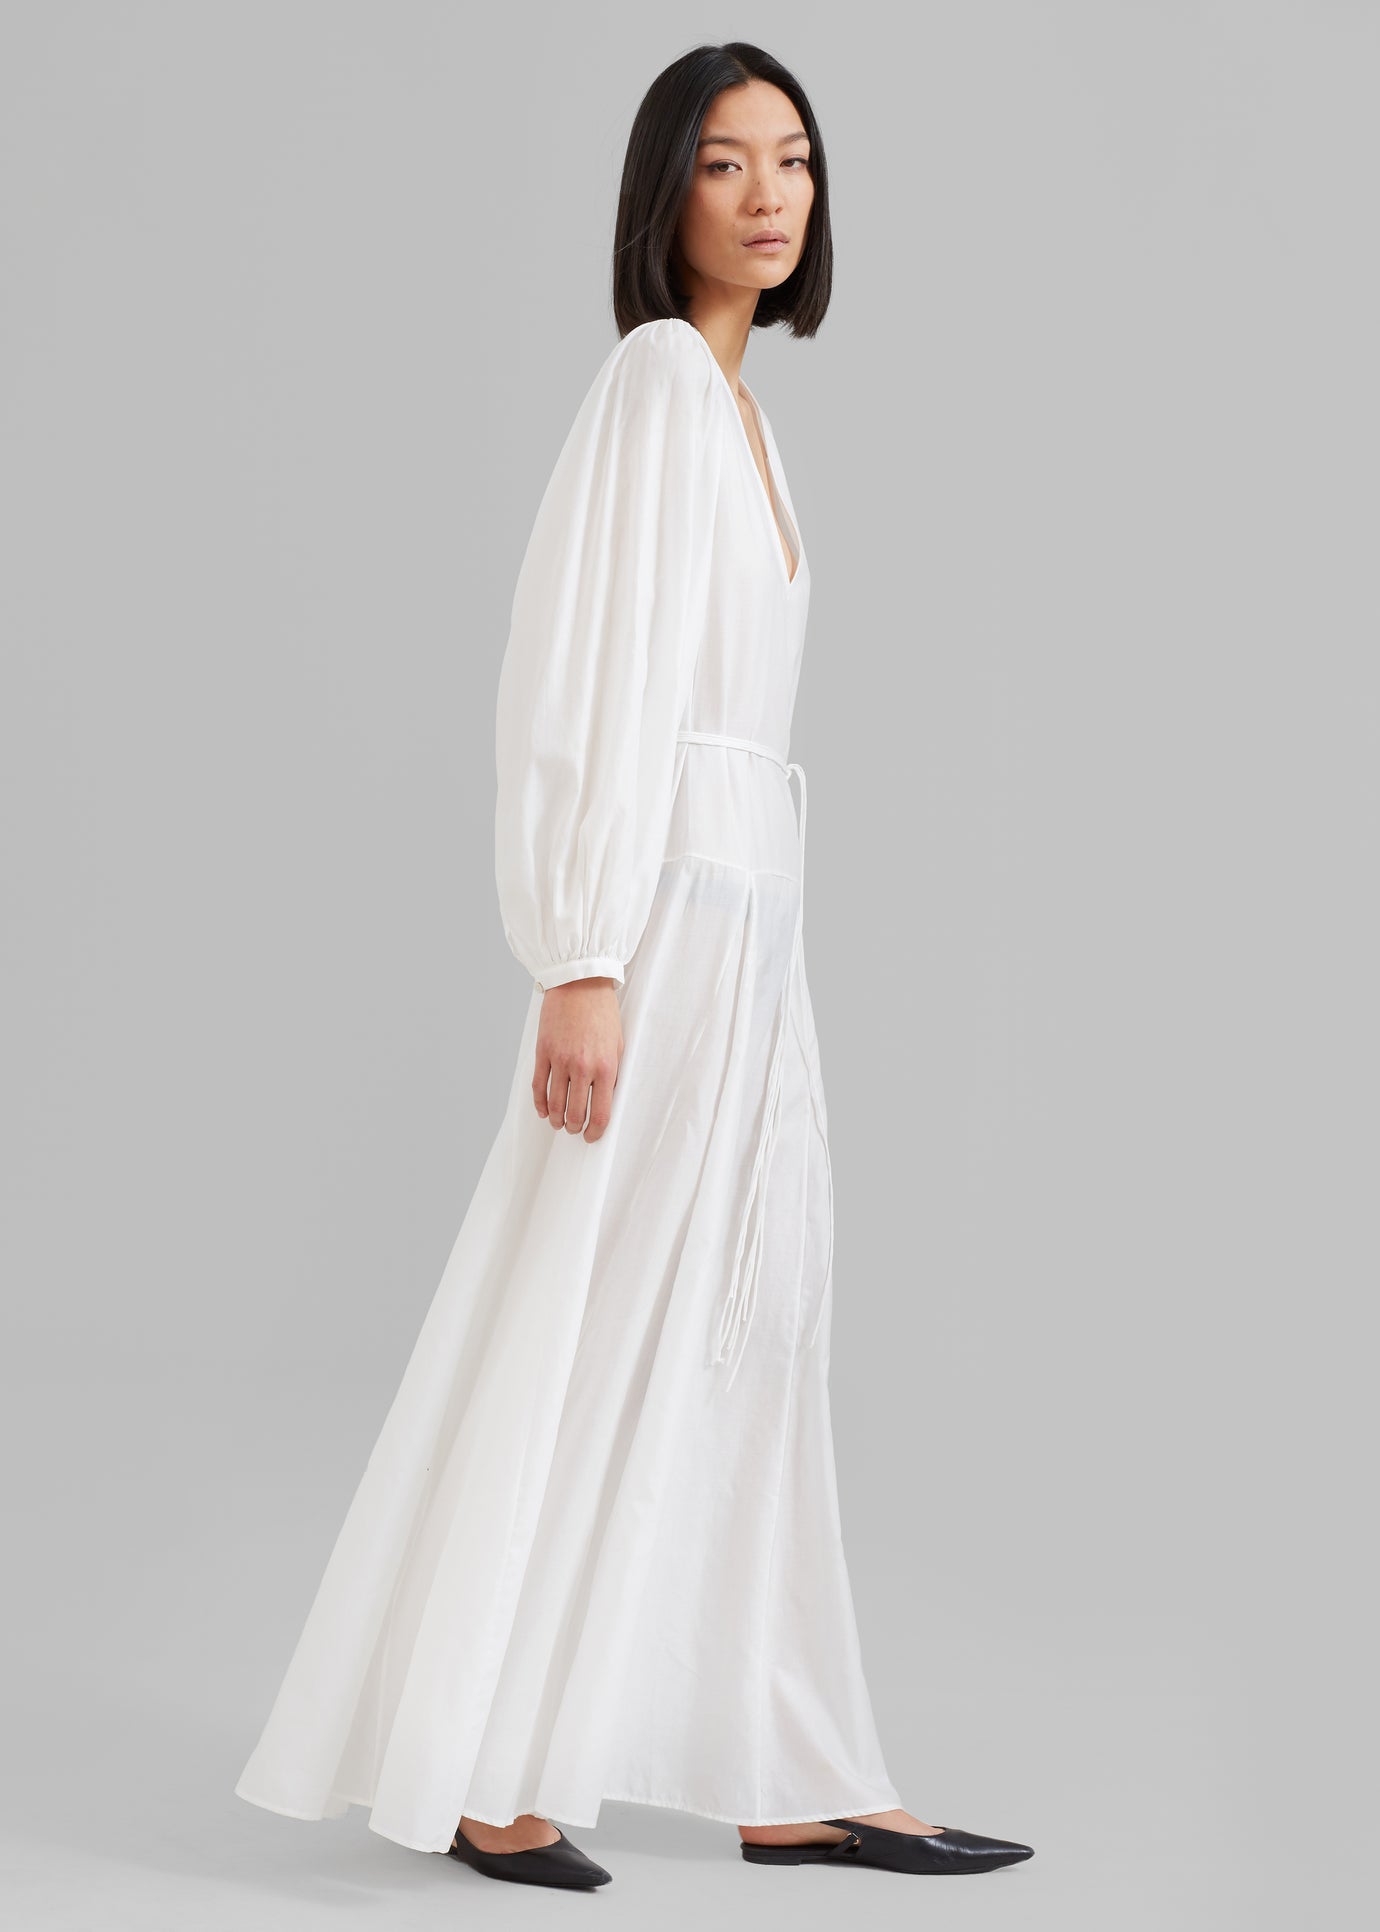 MATIN Cortona Dress - White